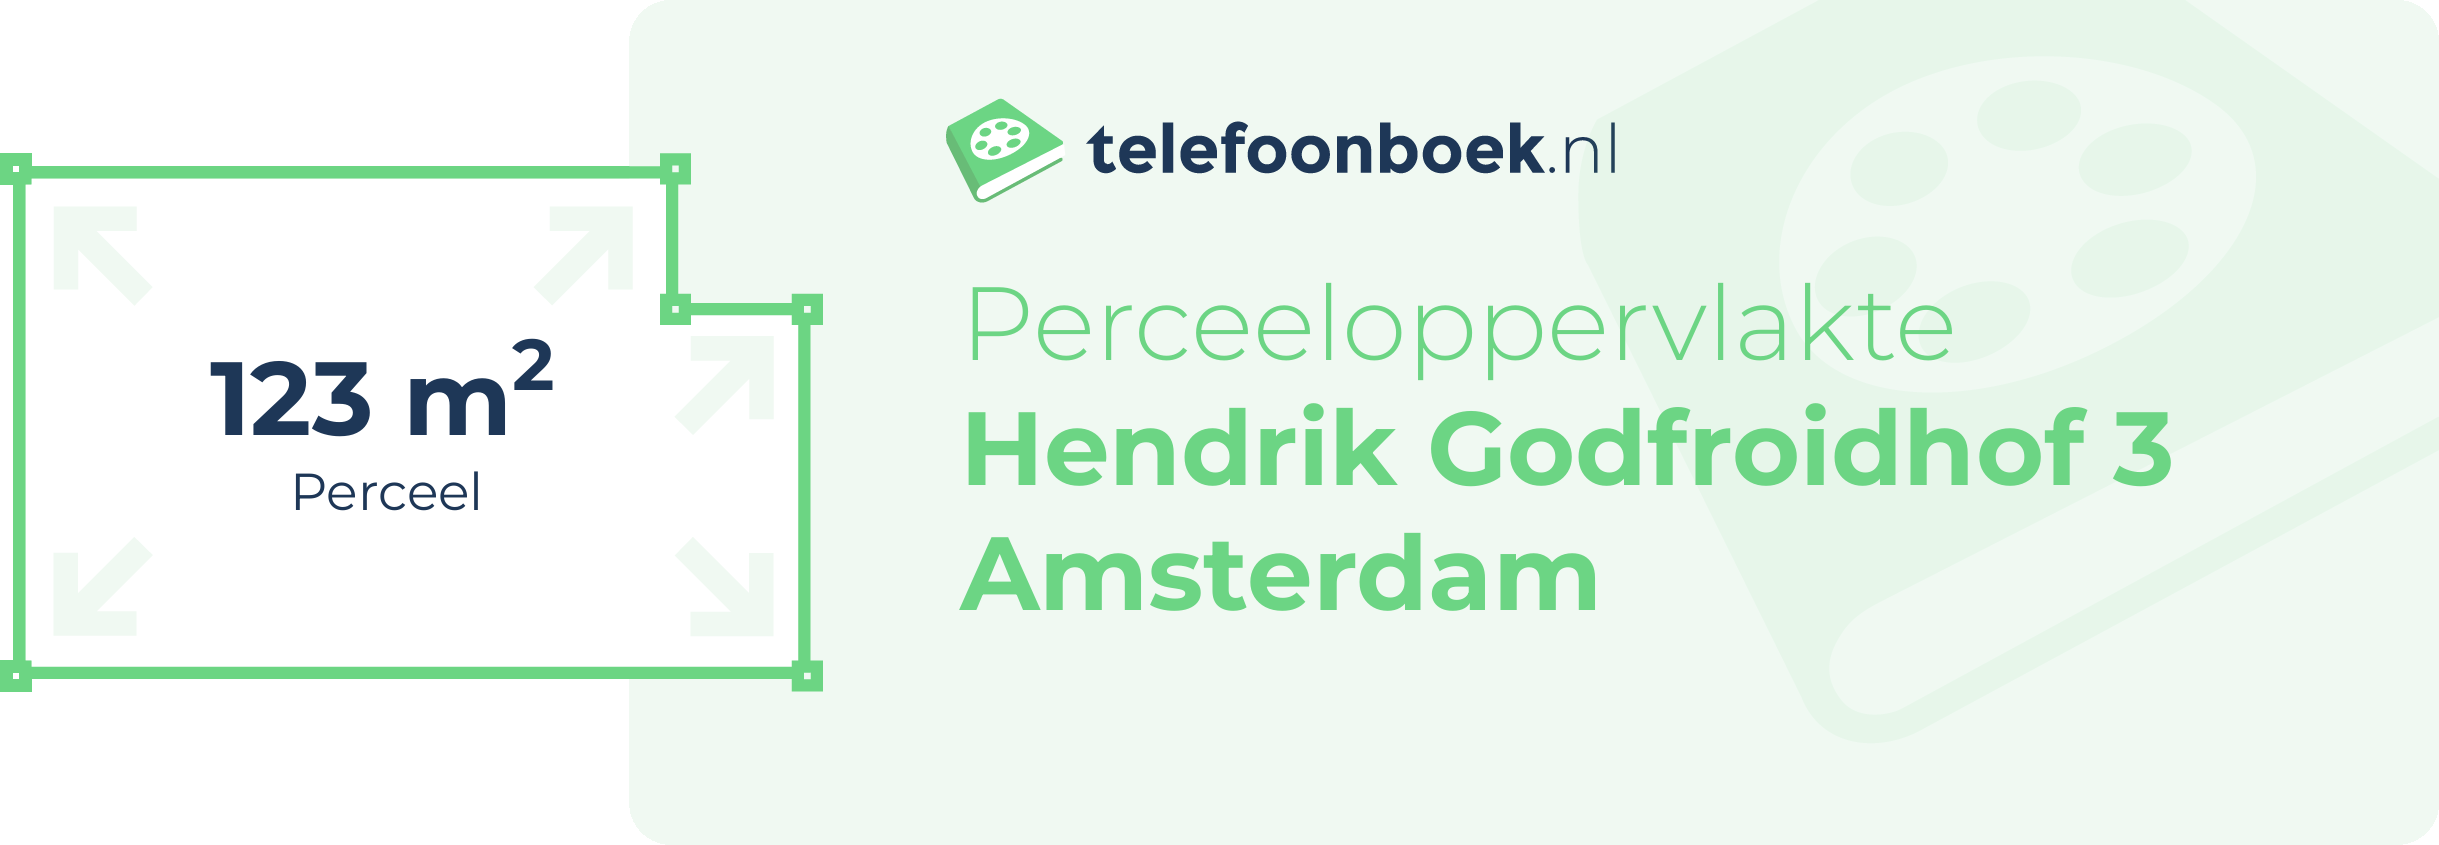 Perceeloppervlakte Hendrik Godfroidhof 3 Amsterdam